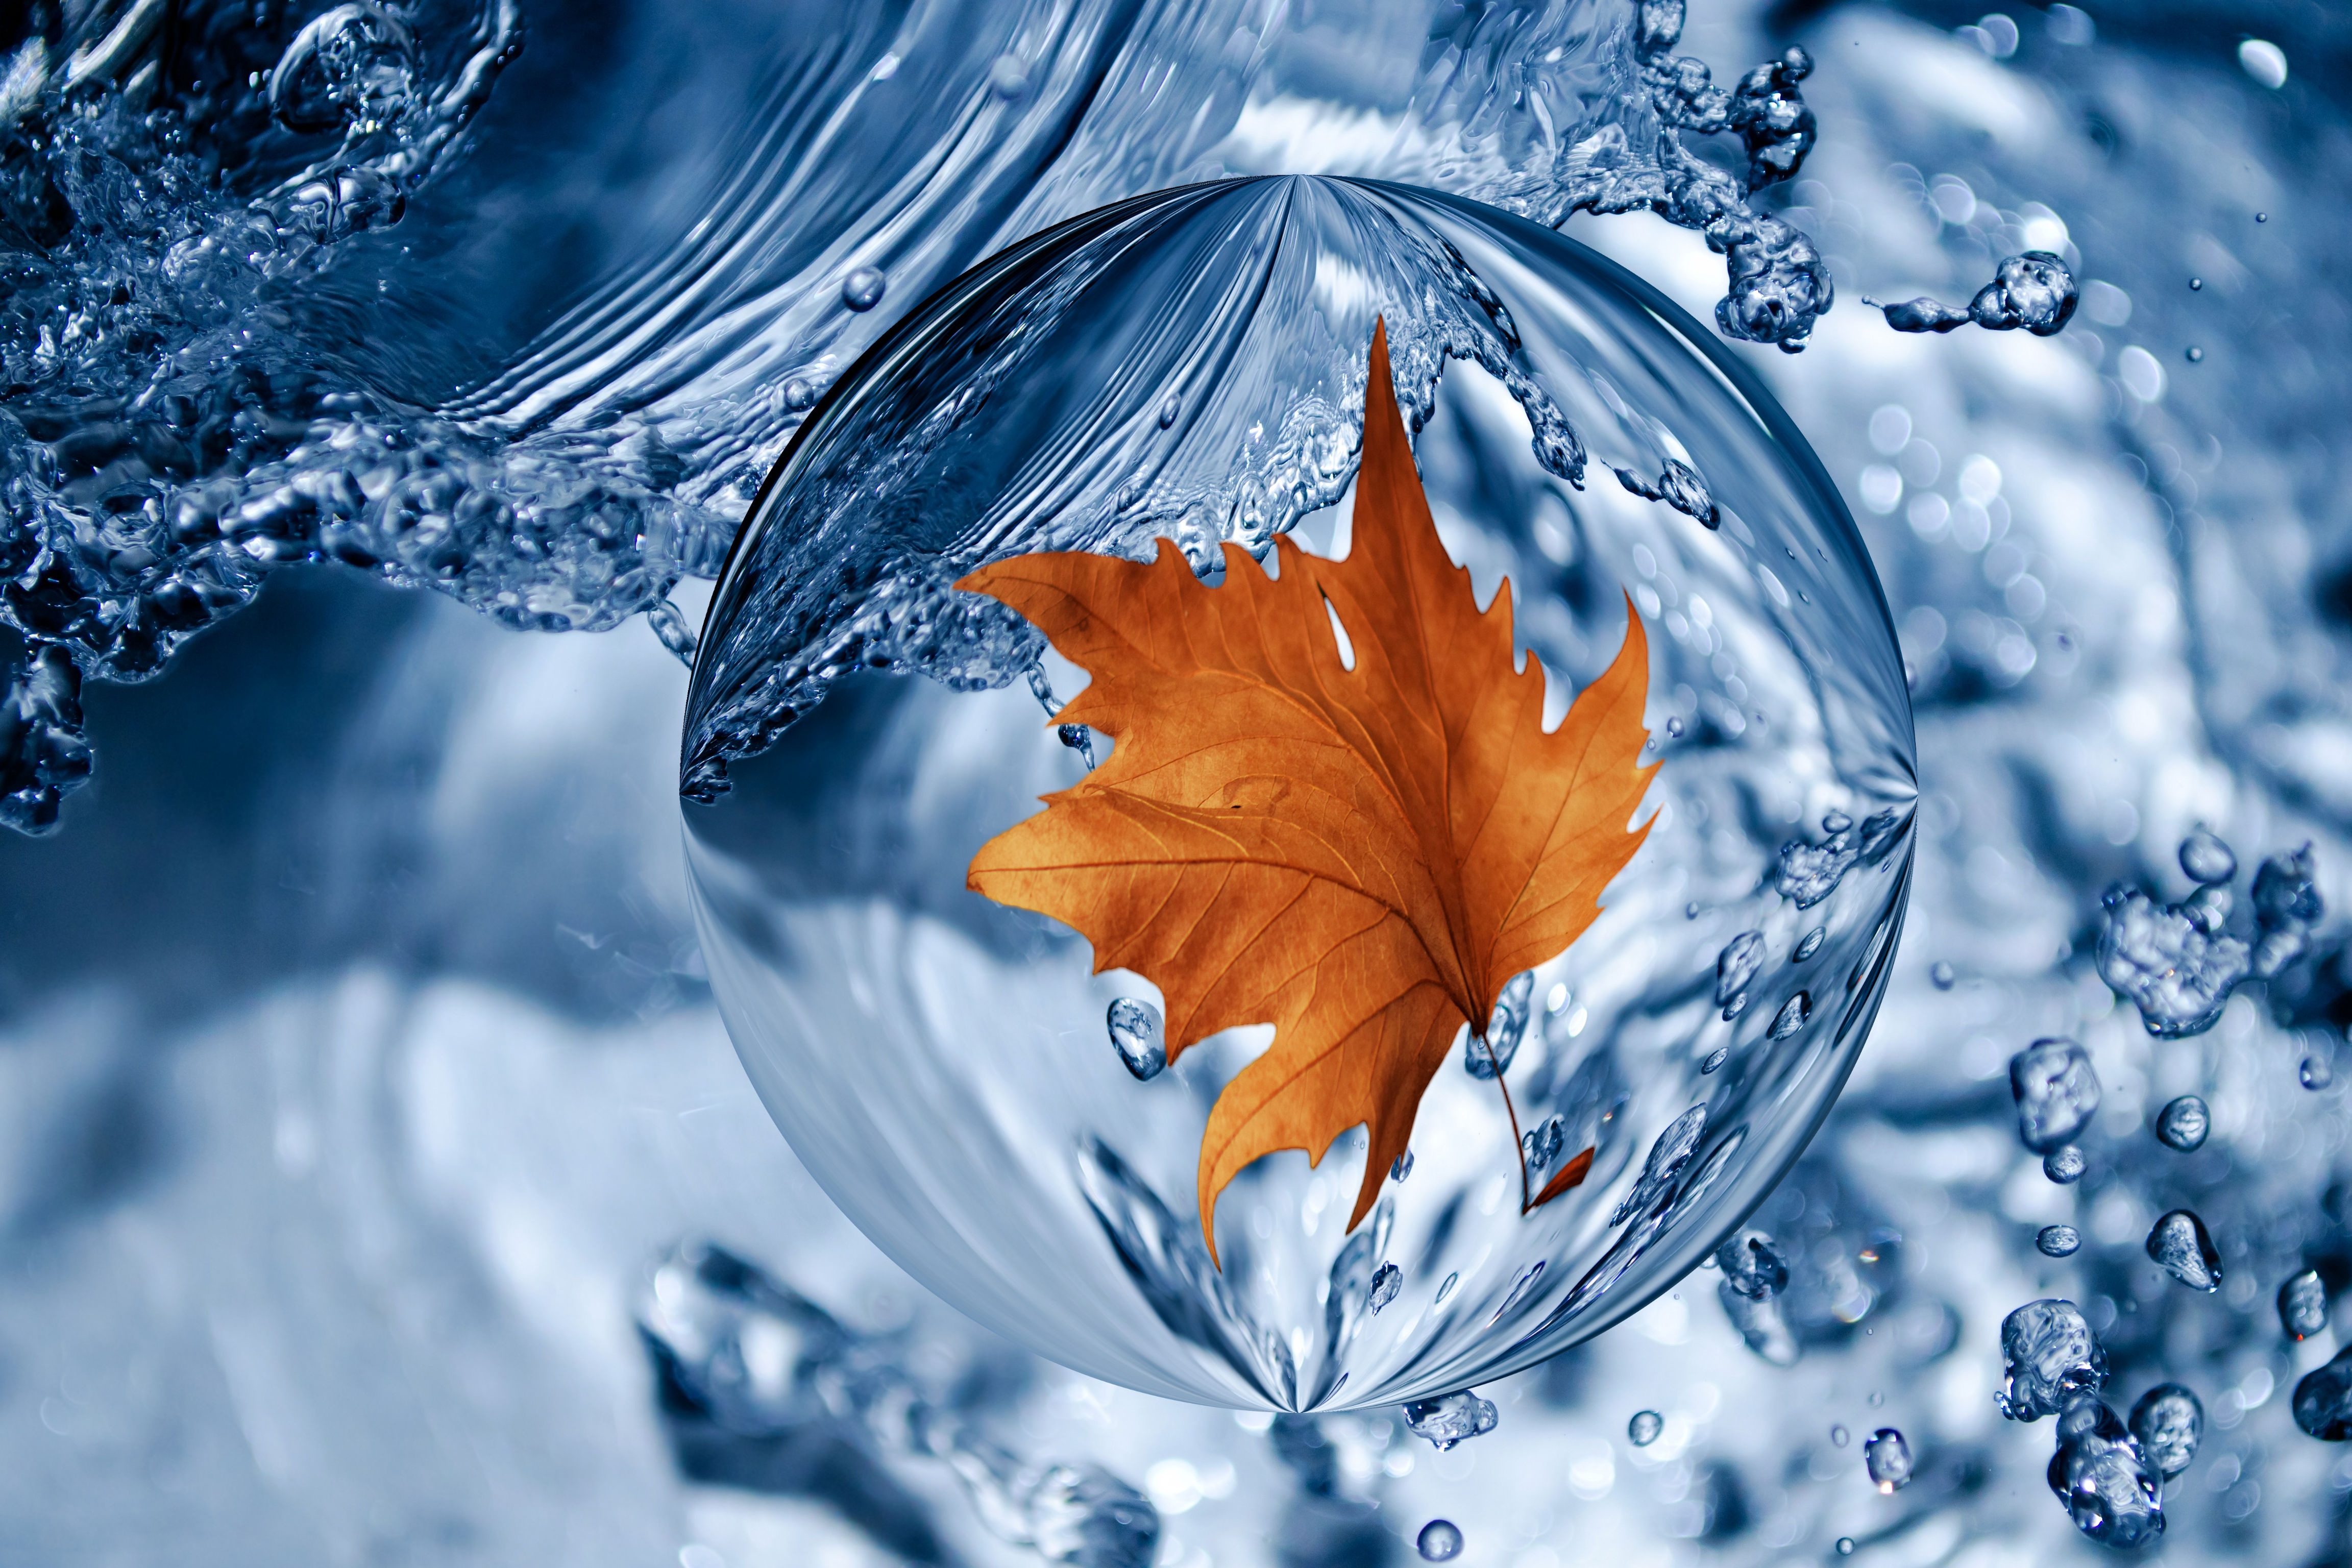 Leaf in a Water Drop 4k Ultra HD Wallpaper | Background ...
